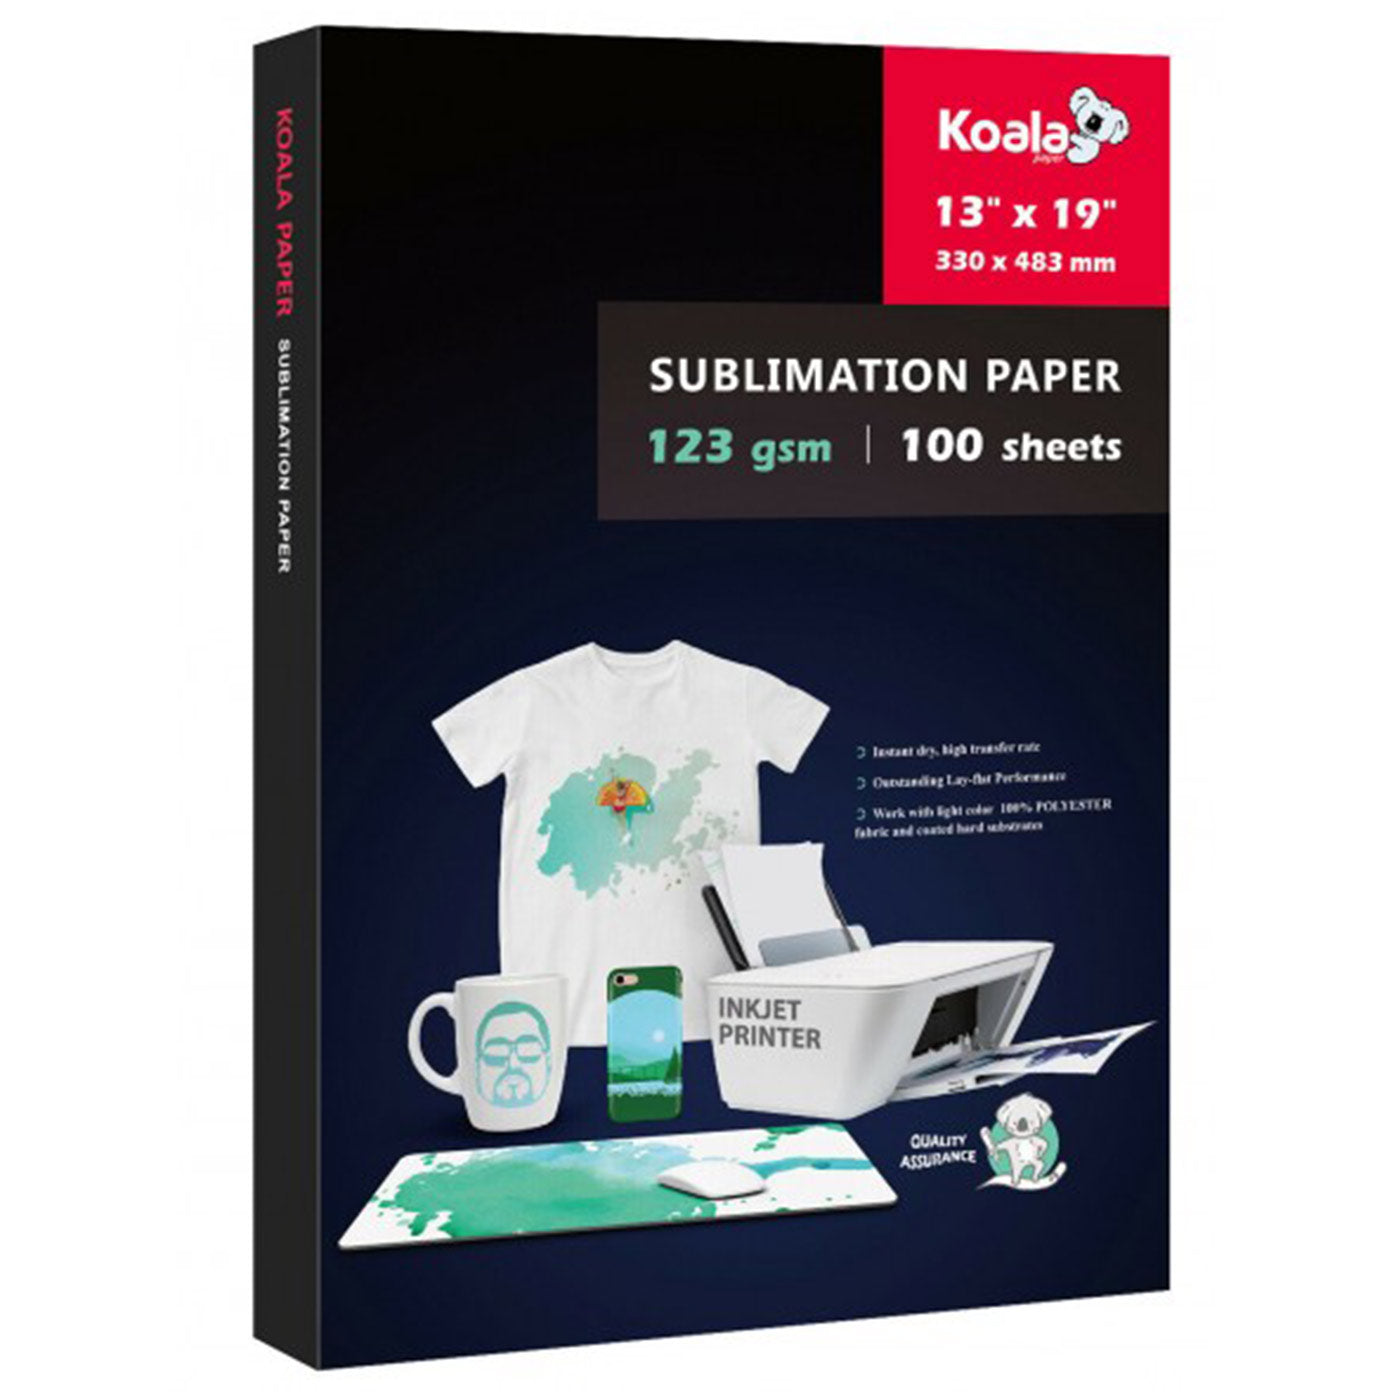 KOALA Sublimation Transfer Paper for All Inkjet Printer 123gsm 100 Sheets